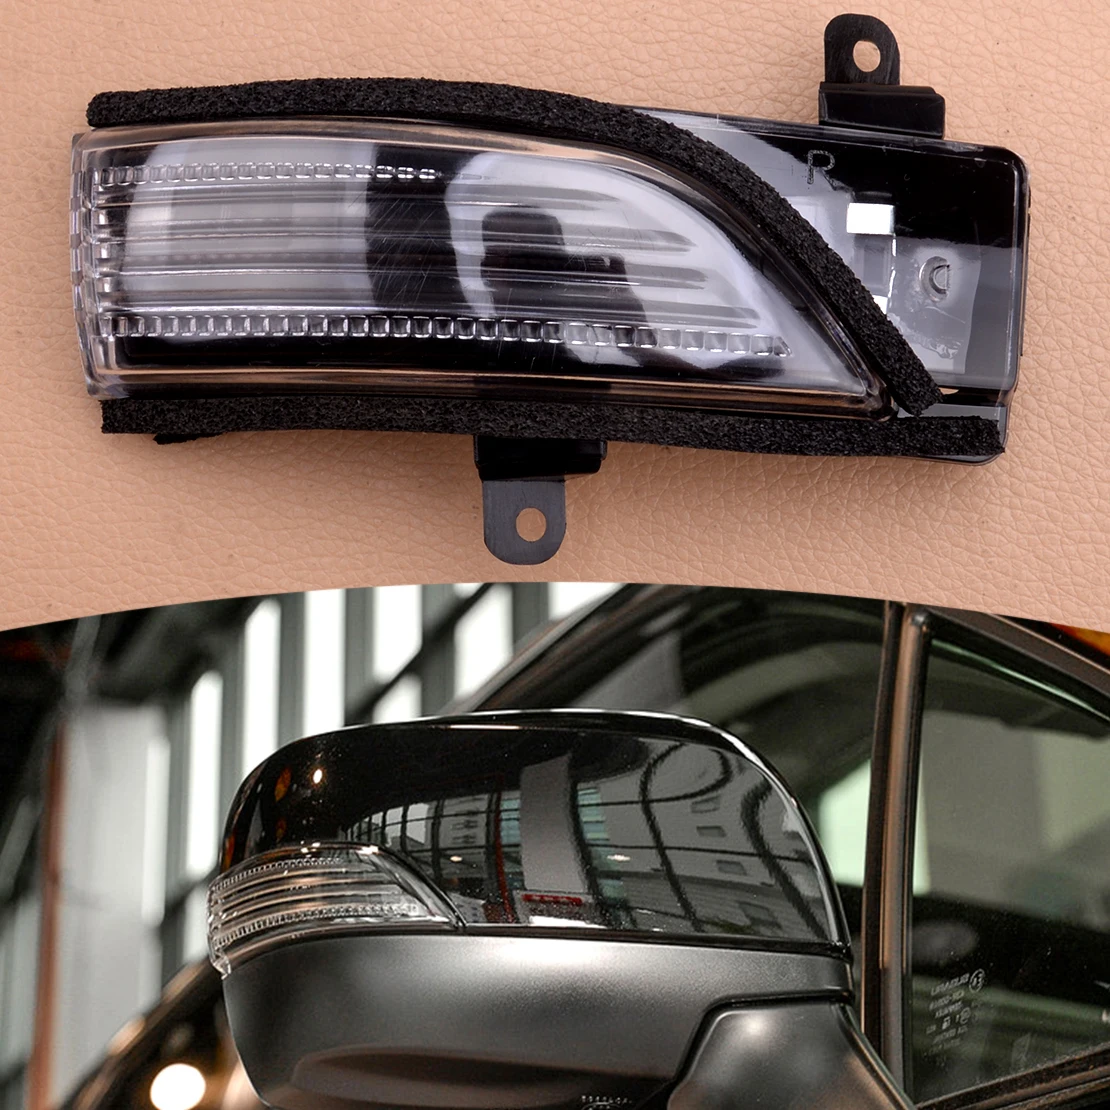 

Зеркало заднего вида переднее и правое, 84401AJ000, указатель поворота, подходит для Subaru Forester Impreza XV Crossrek Outback WRX Legacy